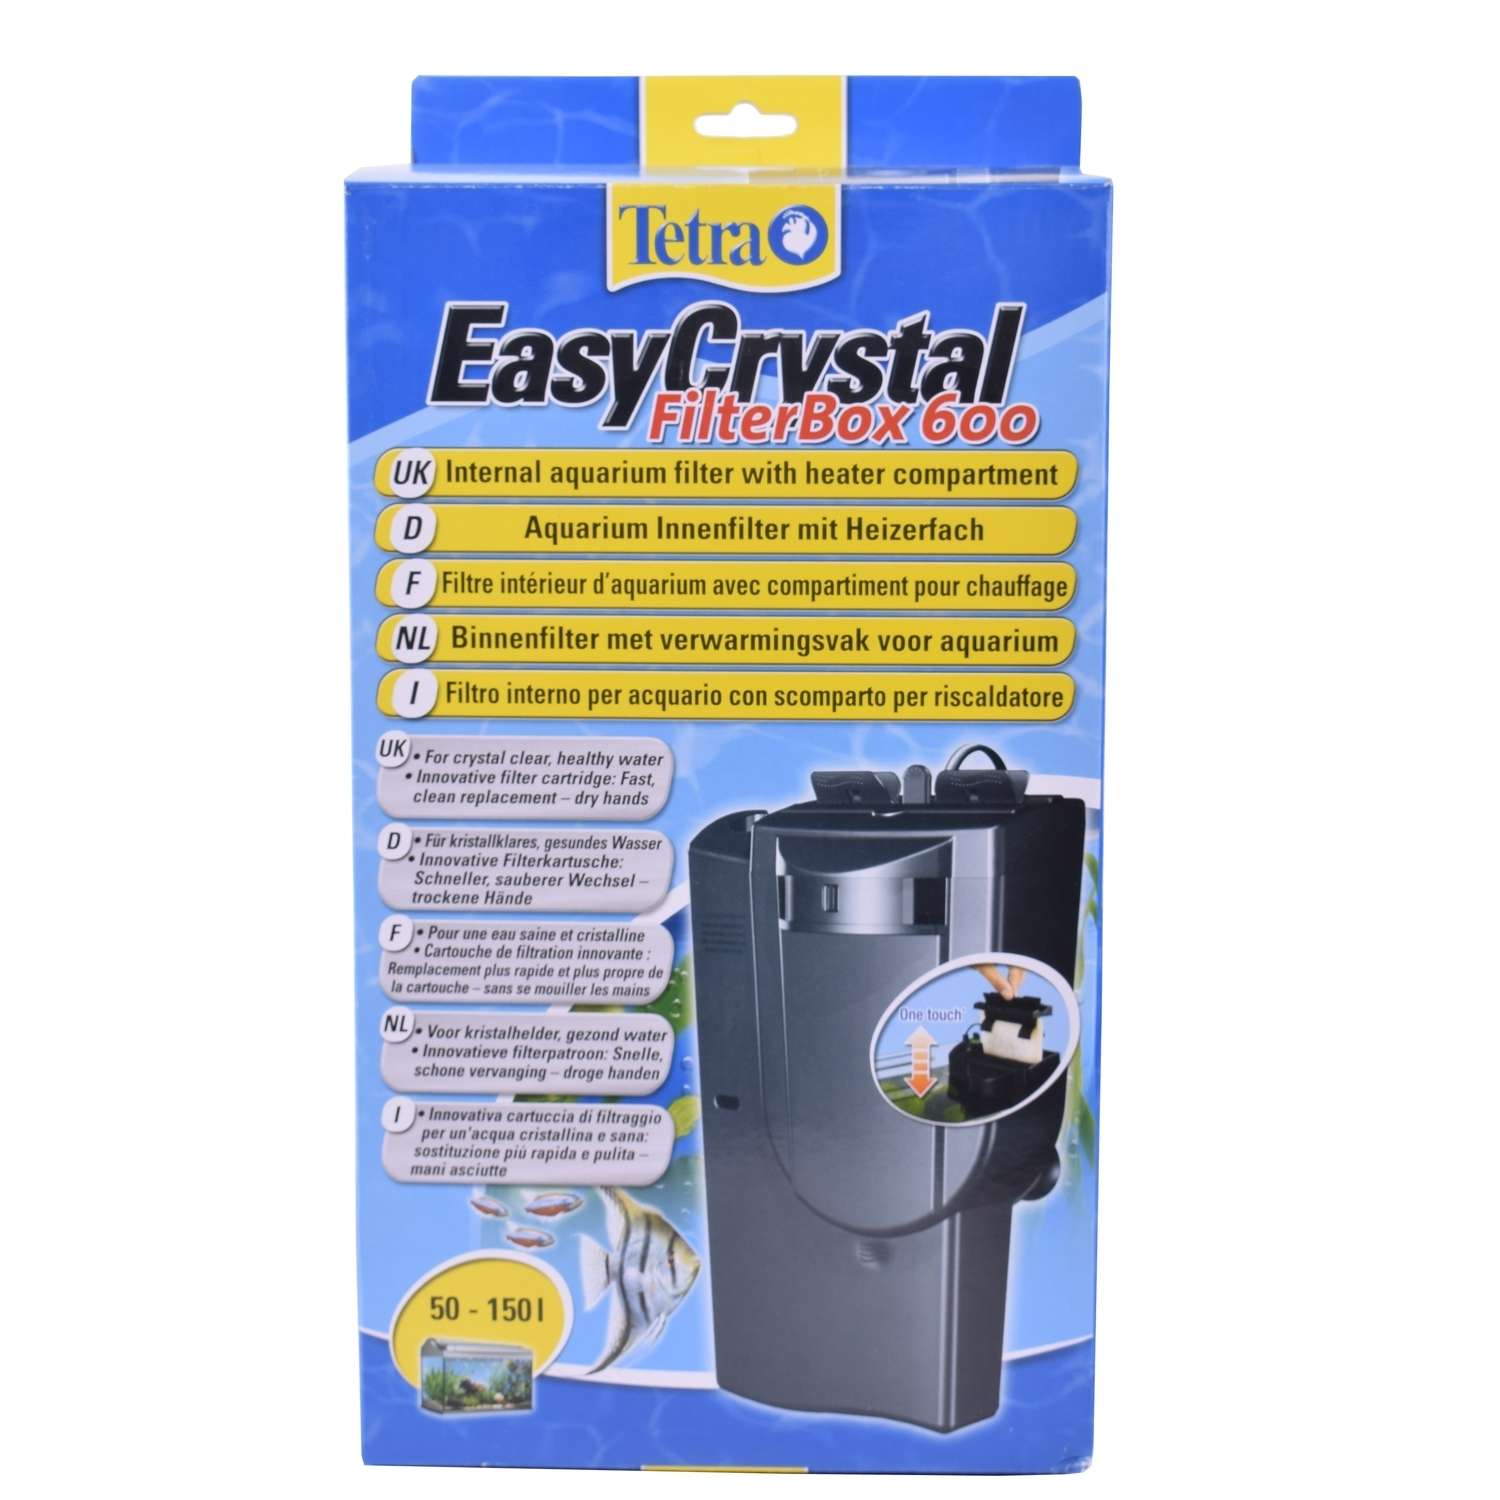 Фильтр для аквариумов Tetra EasyCrystal 600 Filter Box внутренний 100-130л - фото 2